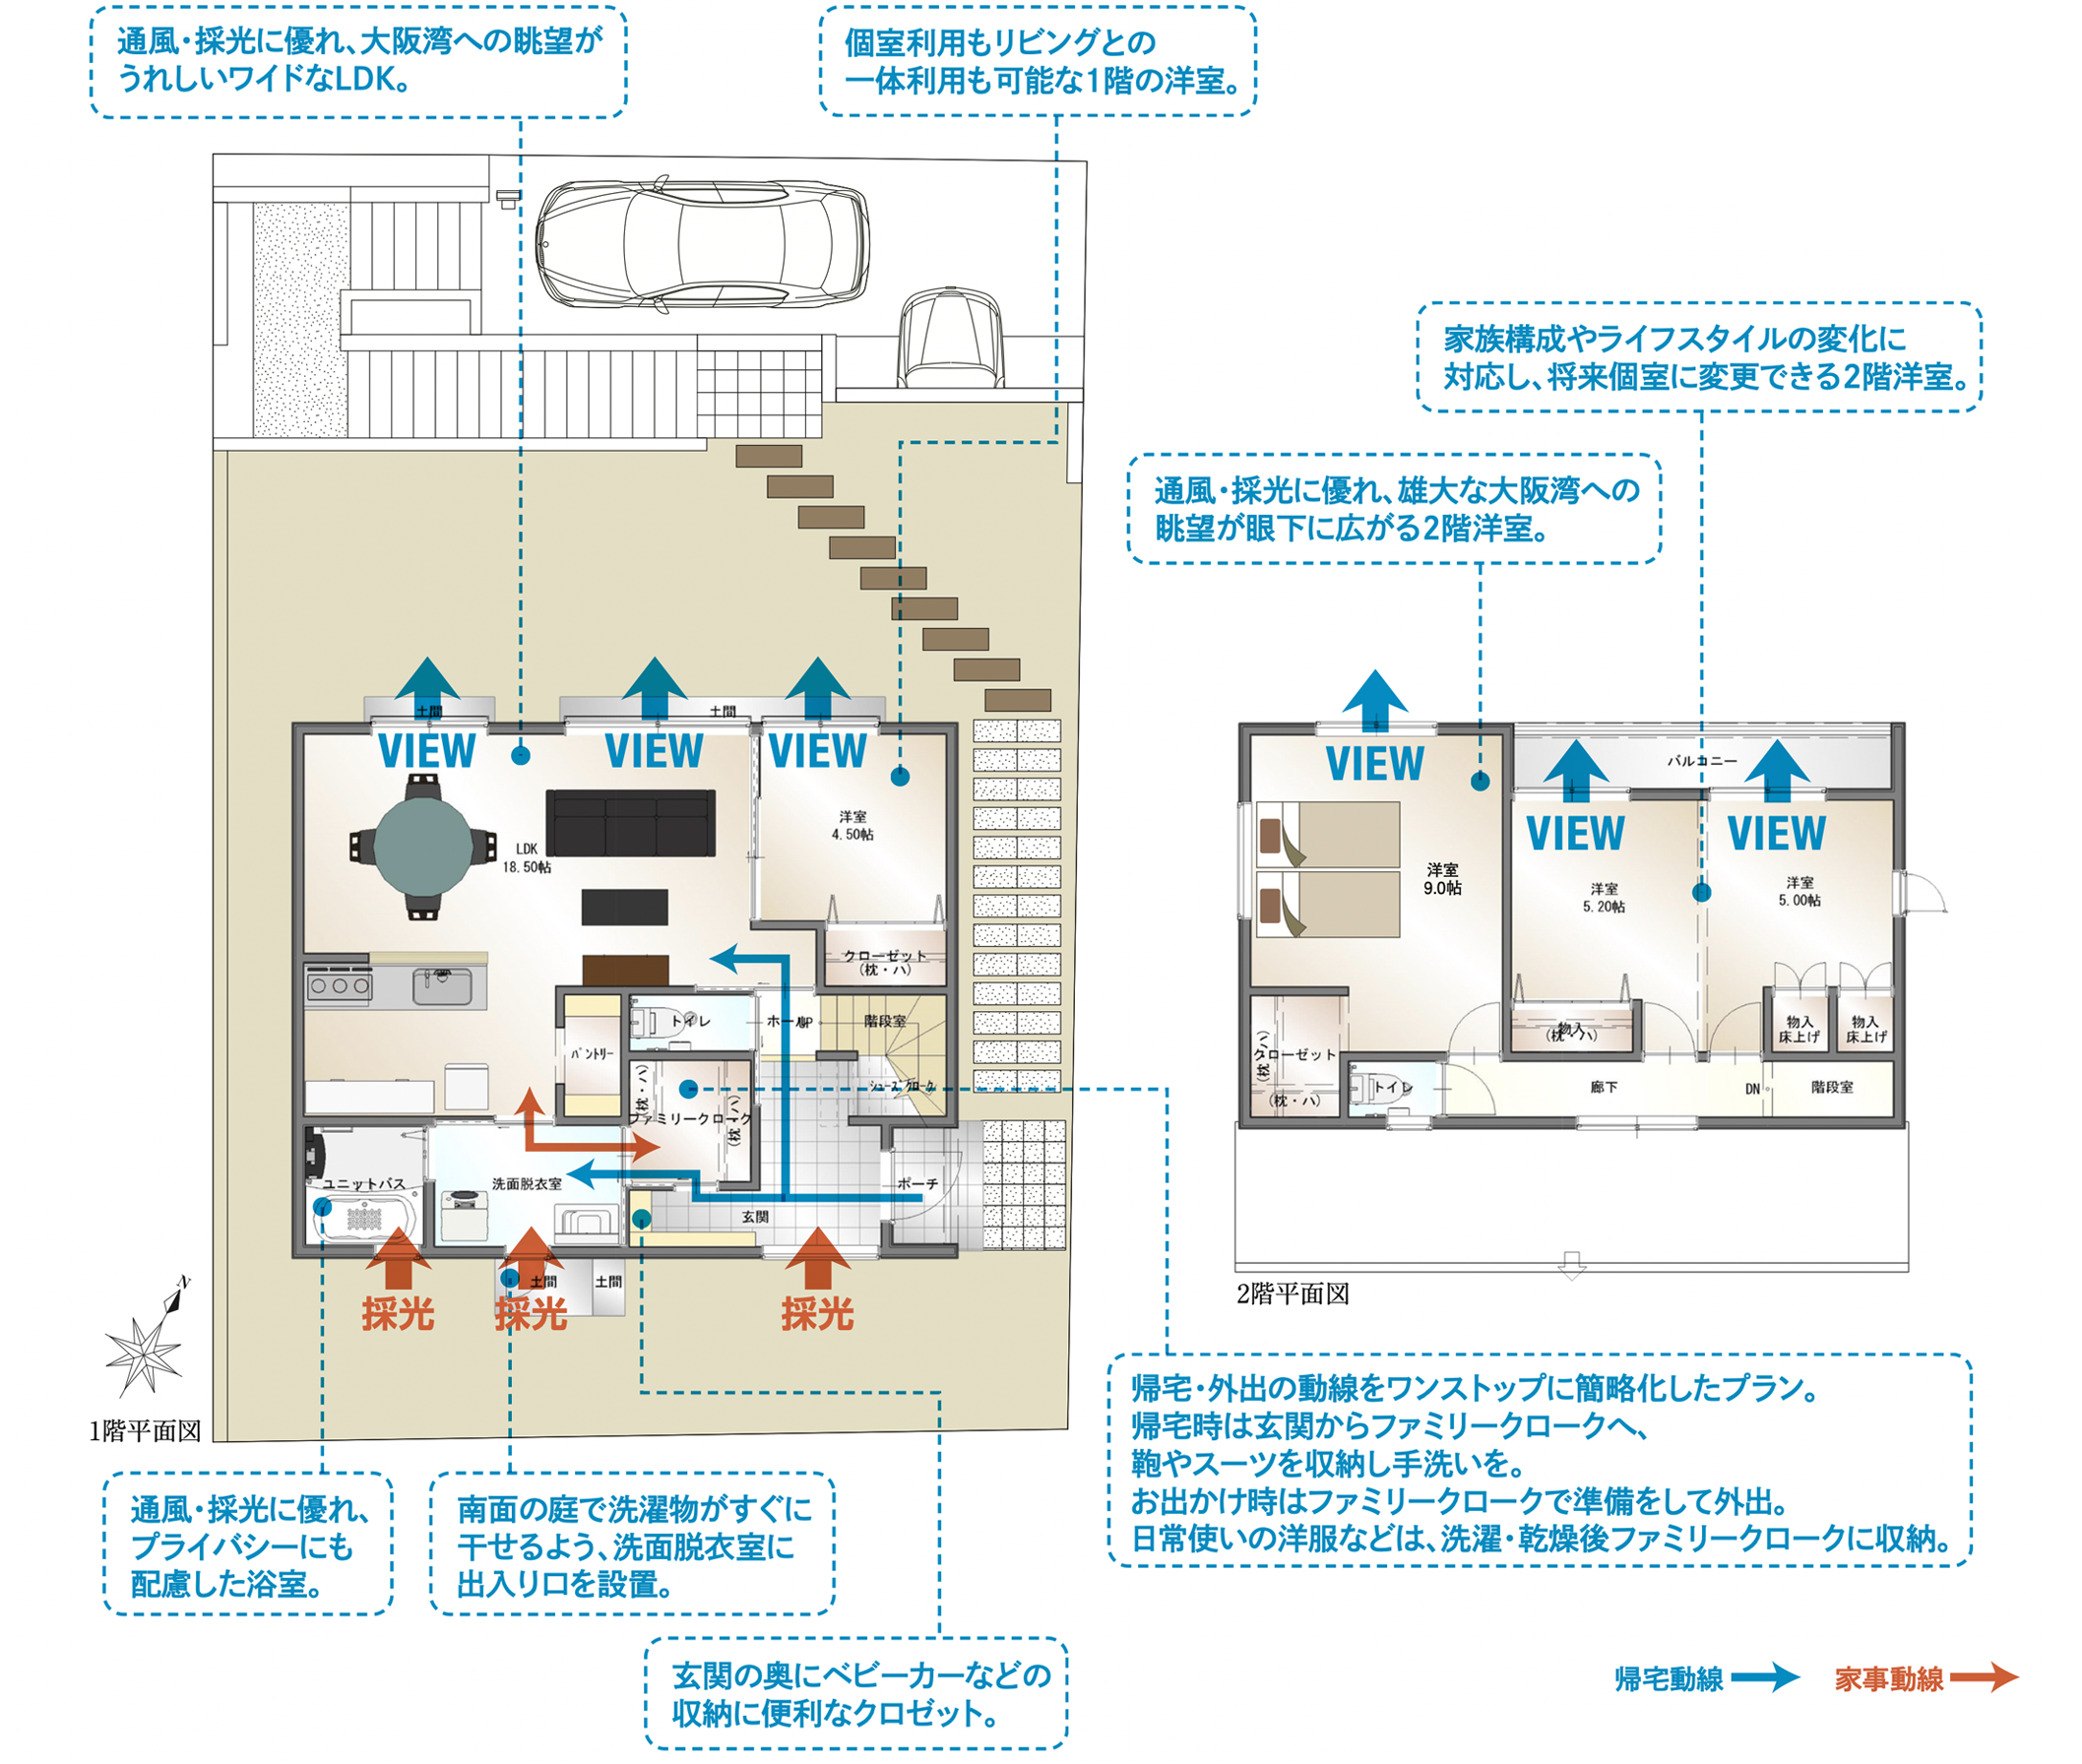 1階平面図：通風・採光に優れ、大阪湾への眺望がうれしいワイドなLDK。個室利用もリビングとの一体利用も可能な1階の洋室。通風・採光に優れ、プライバシーにも配慮した浴室。南面の庭で洗濯物がすぐに干せるよう、洗面脱衣室に出入り口を設置。玄関の奥にベビーカーなどの収納に便利なクロゼット。帰宅・外出の動線をワンストップに簡略化したプラン。帰宅時は玄関からファミリークロークへ、鞄やスーツを収納し手洗いを。お出かけ時はファミリークロークで準備をして外出。日常使いの洋服などは、洗濯・乾燥後ファミリークロークに収納。2階平面図：家族構成やライフスタイルの変化に対応し、将来個室に変更できる2階洋室。通風・採光に優れ、雄大な大阪湾への眺望が眼下に広がる2階洋室。